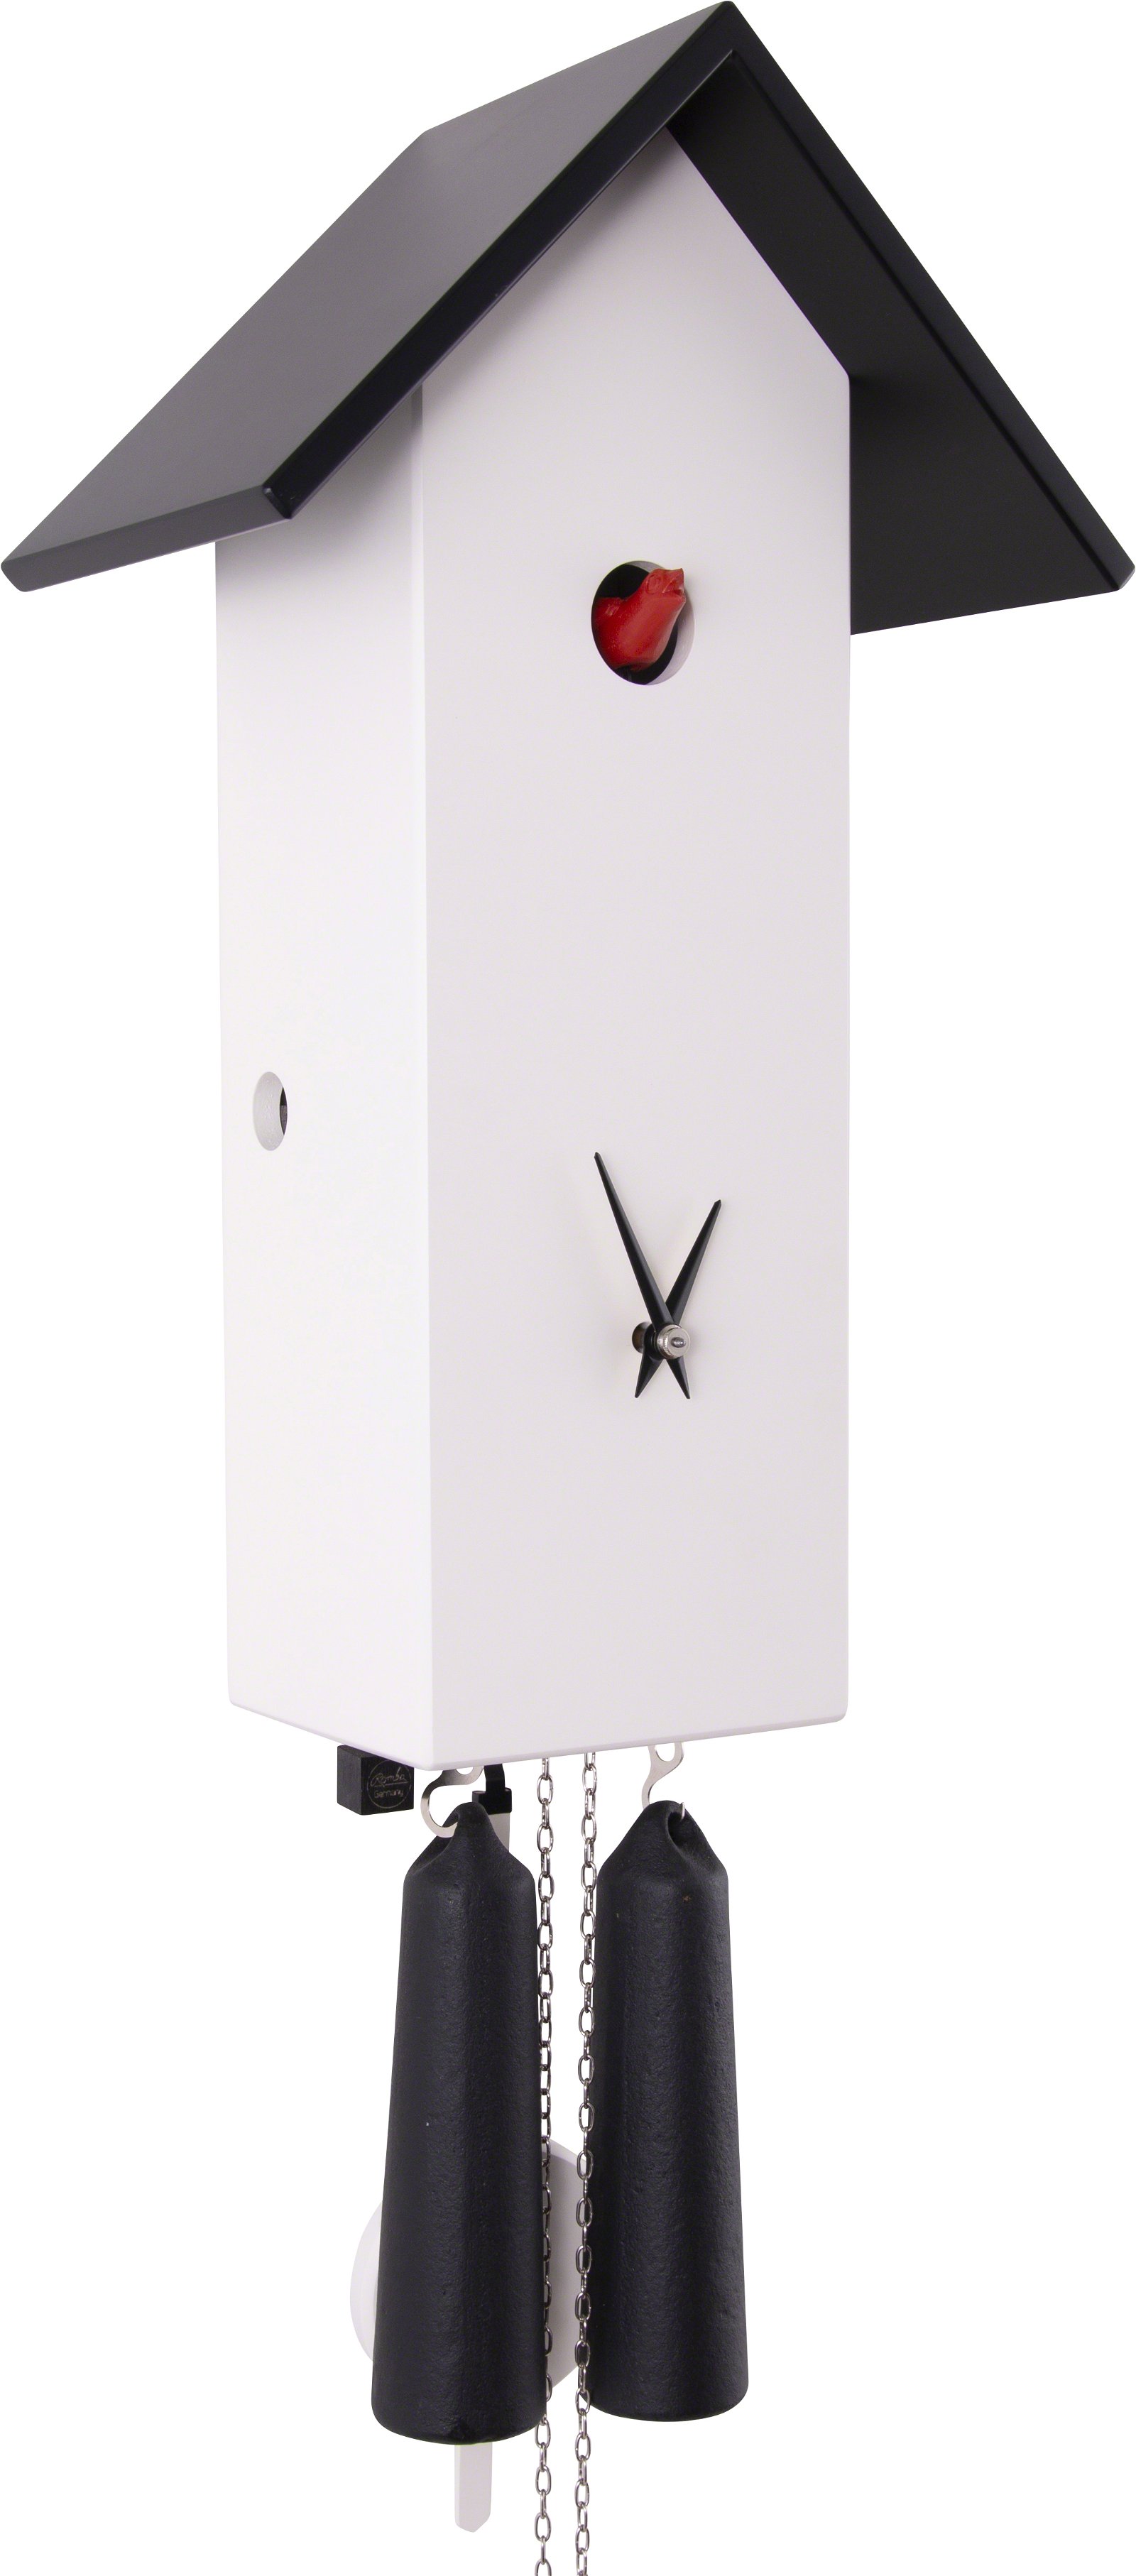 Moderne Kuckucksuhr 8-Tages-Uhrwerk  41cm von Rombach & Haas